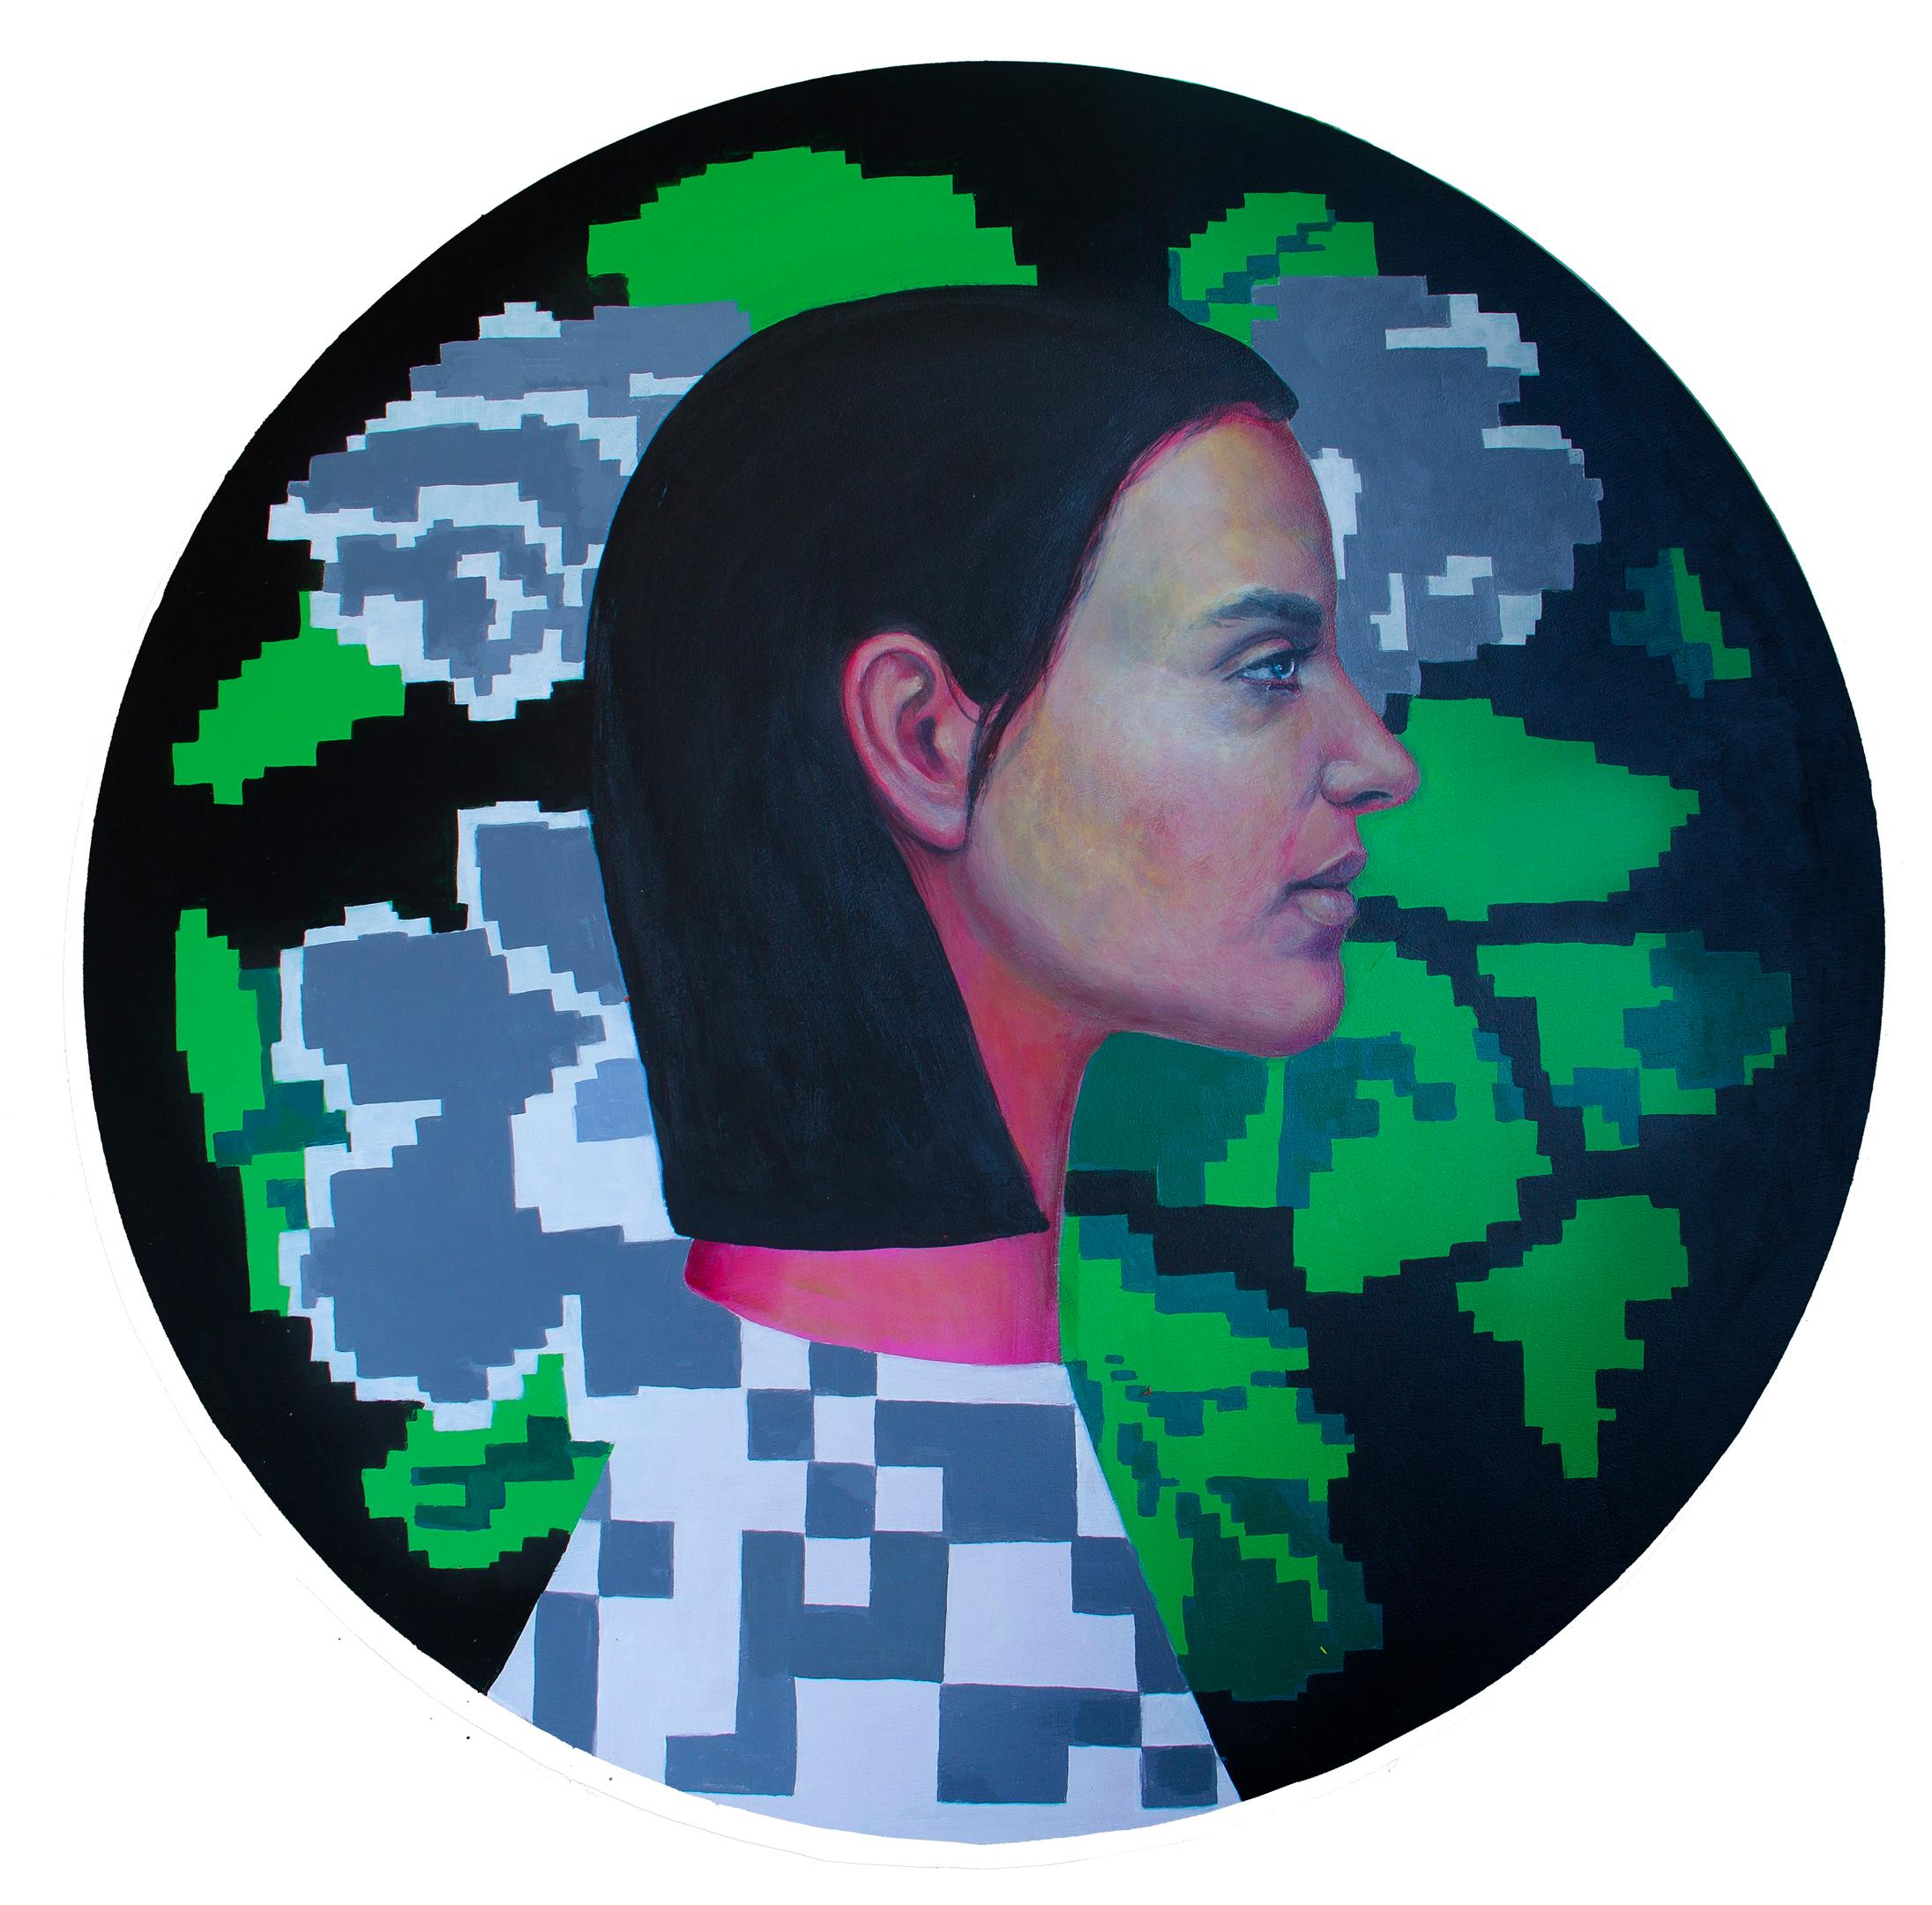 Frauenporträt auf einem hölzernen Kreis mit Blumen und Pixeln. "Währung #2" 